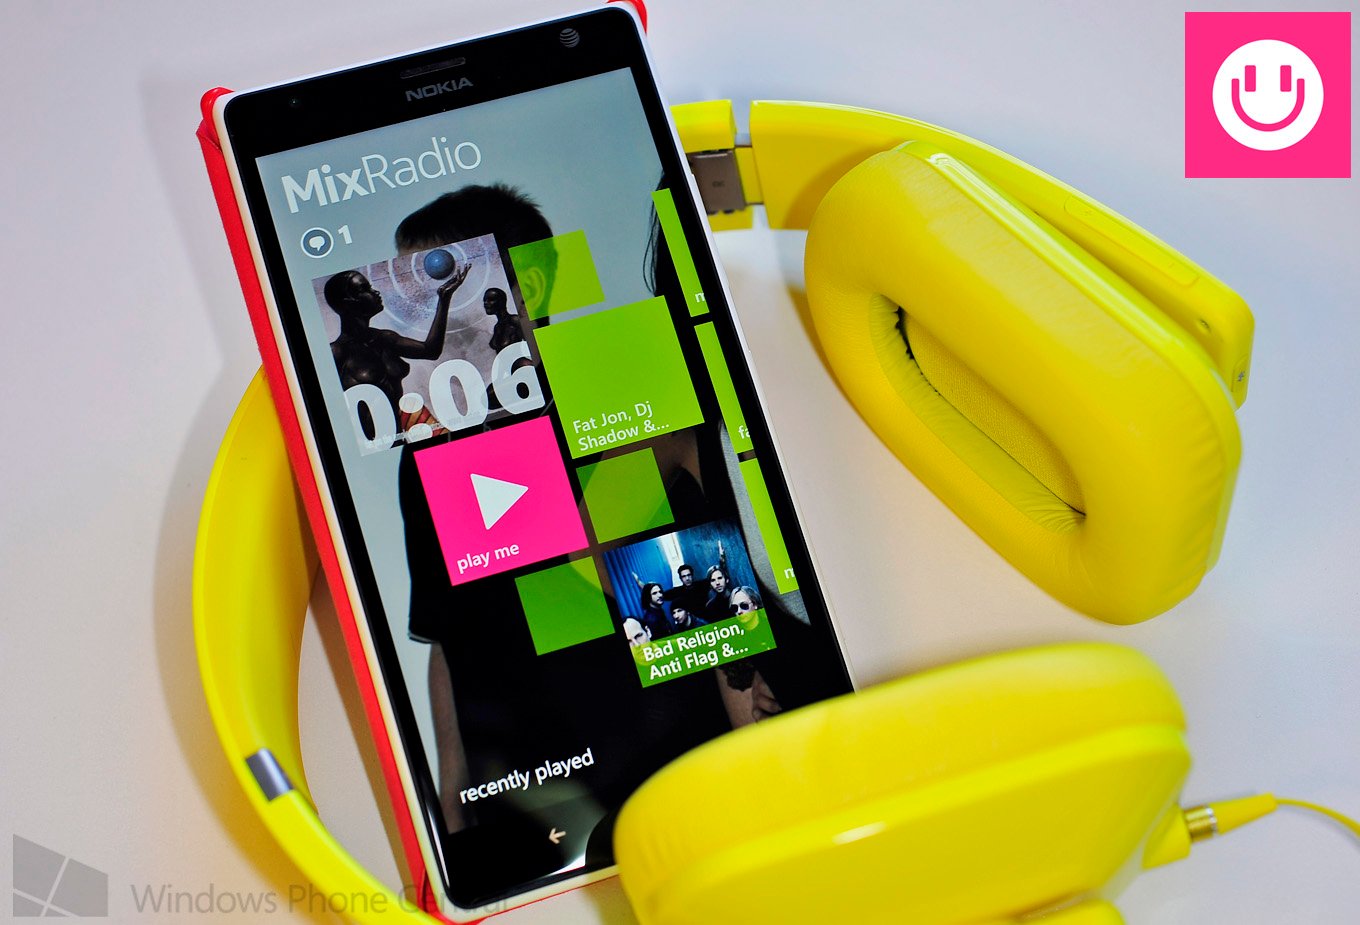 Nokia Mix Radio